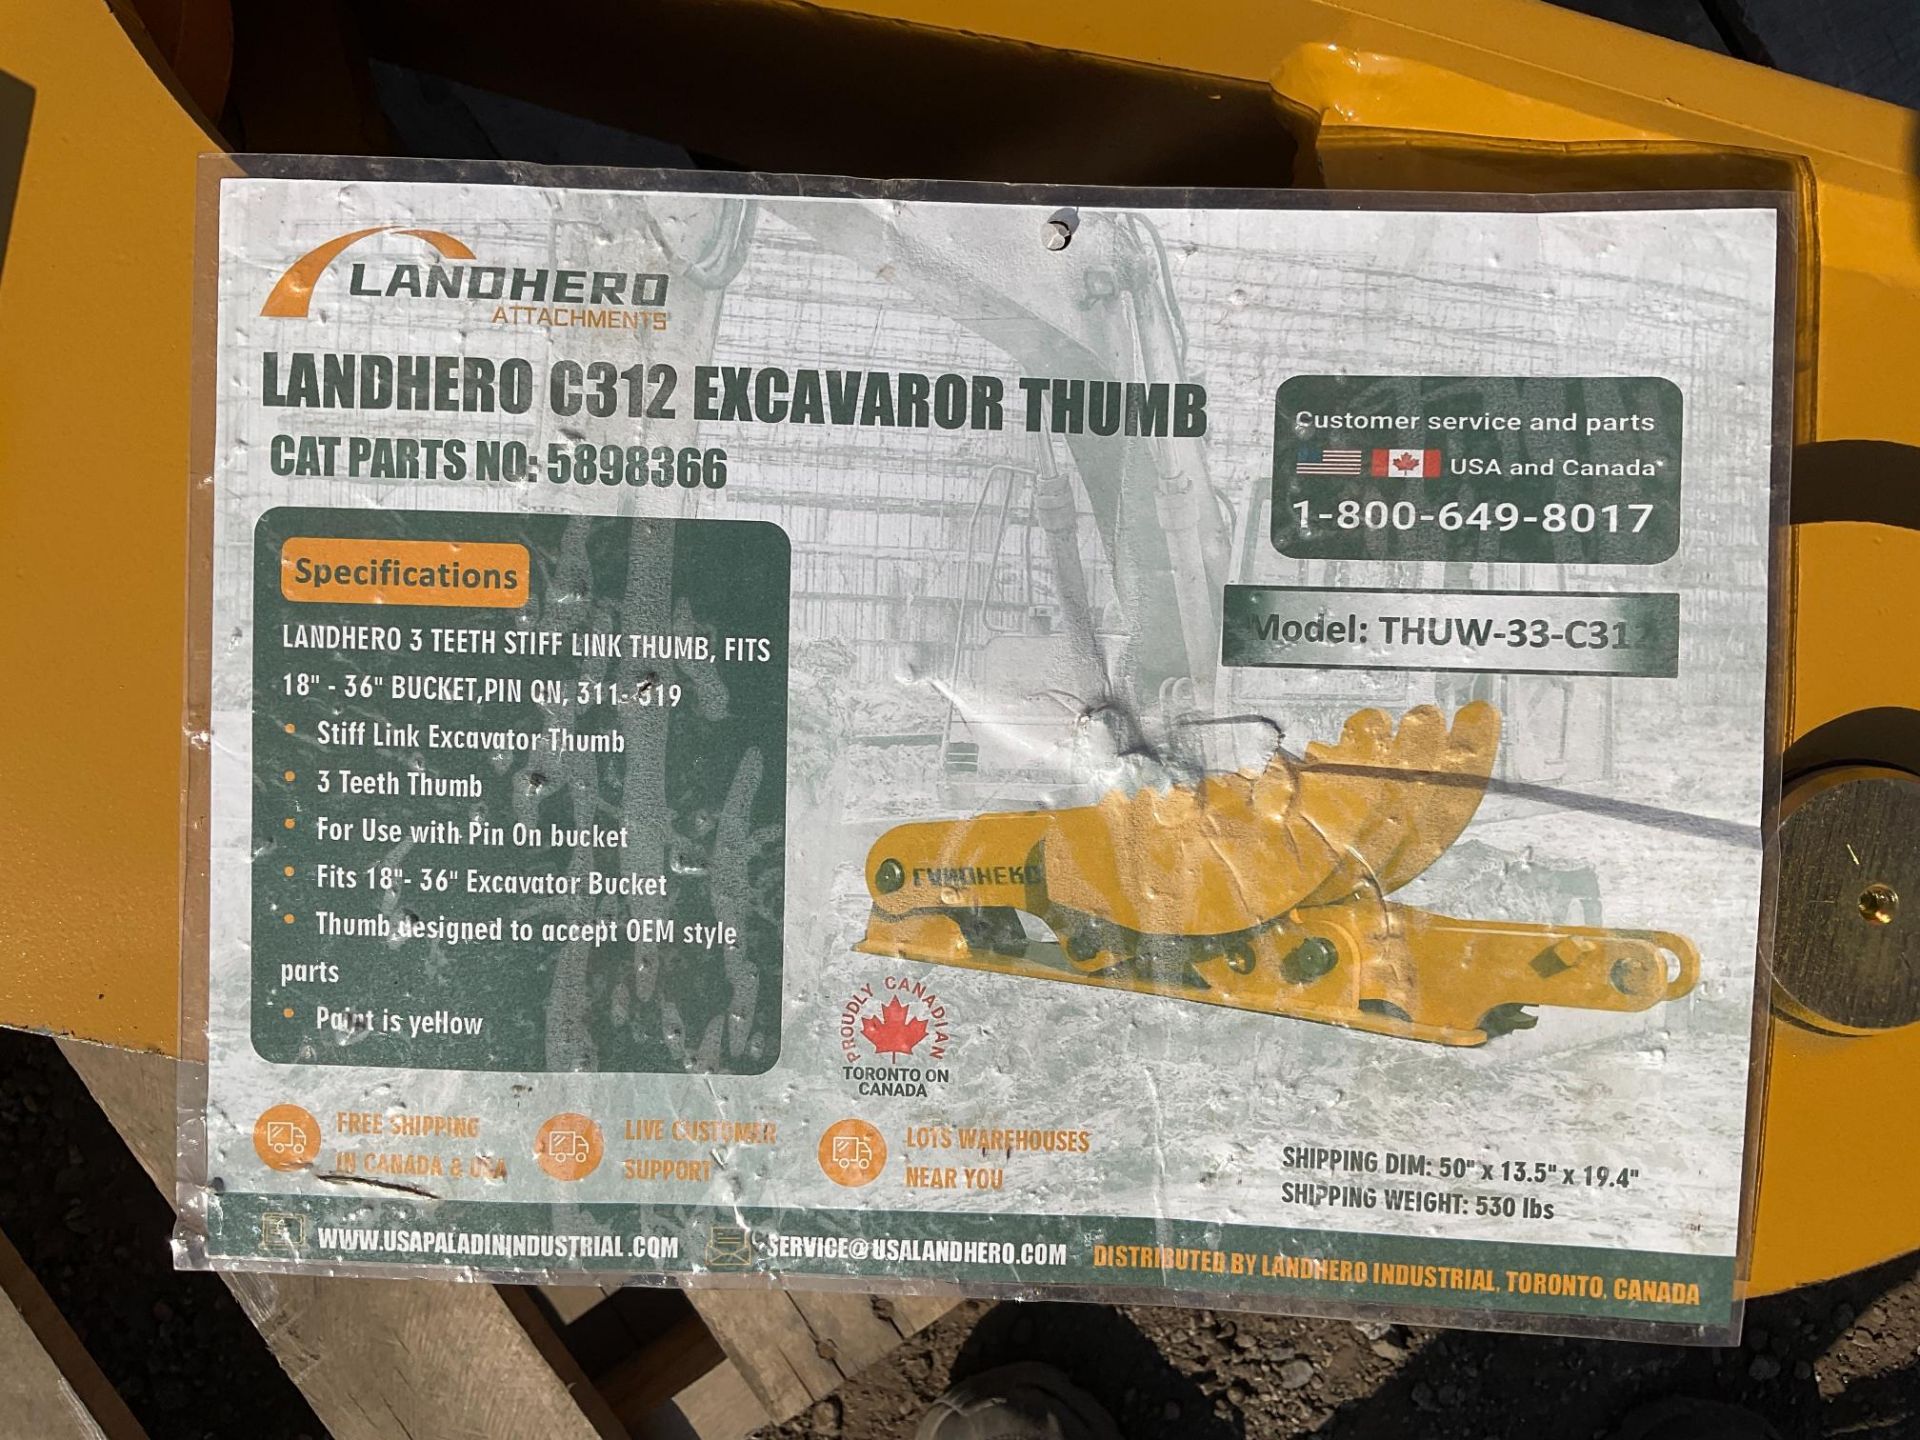 Landhero C312 Excavator Thumb - Image 4 of 4